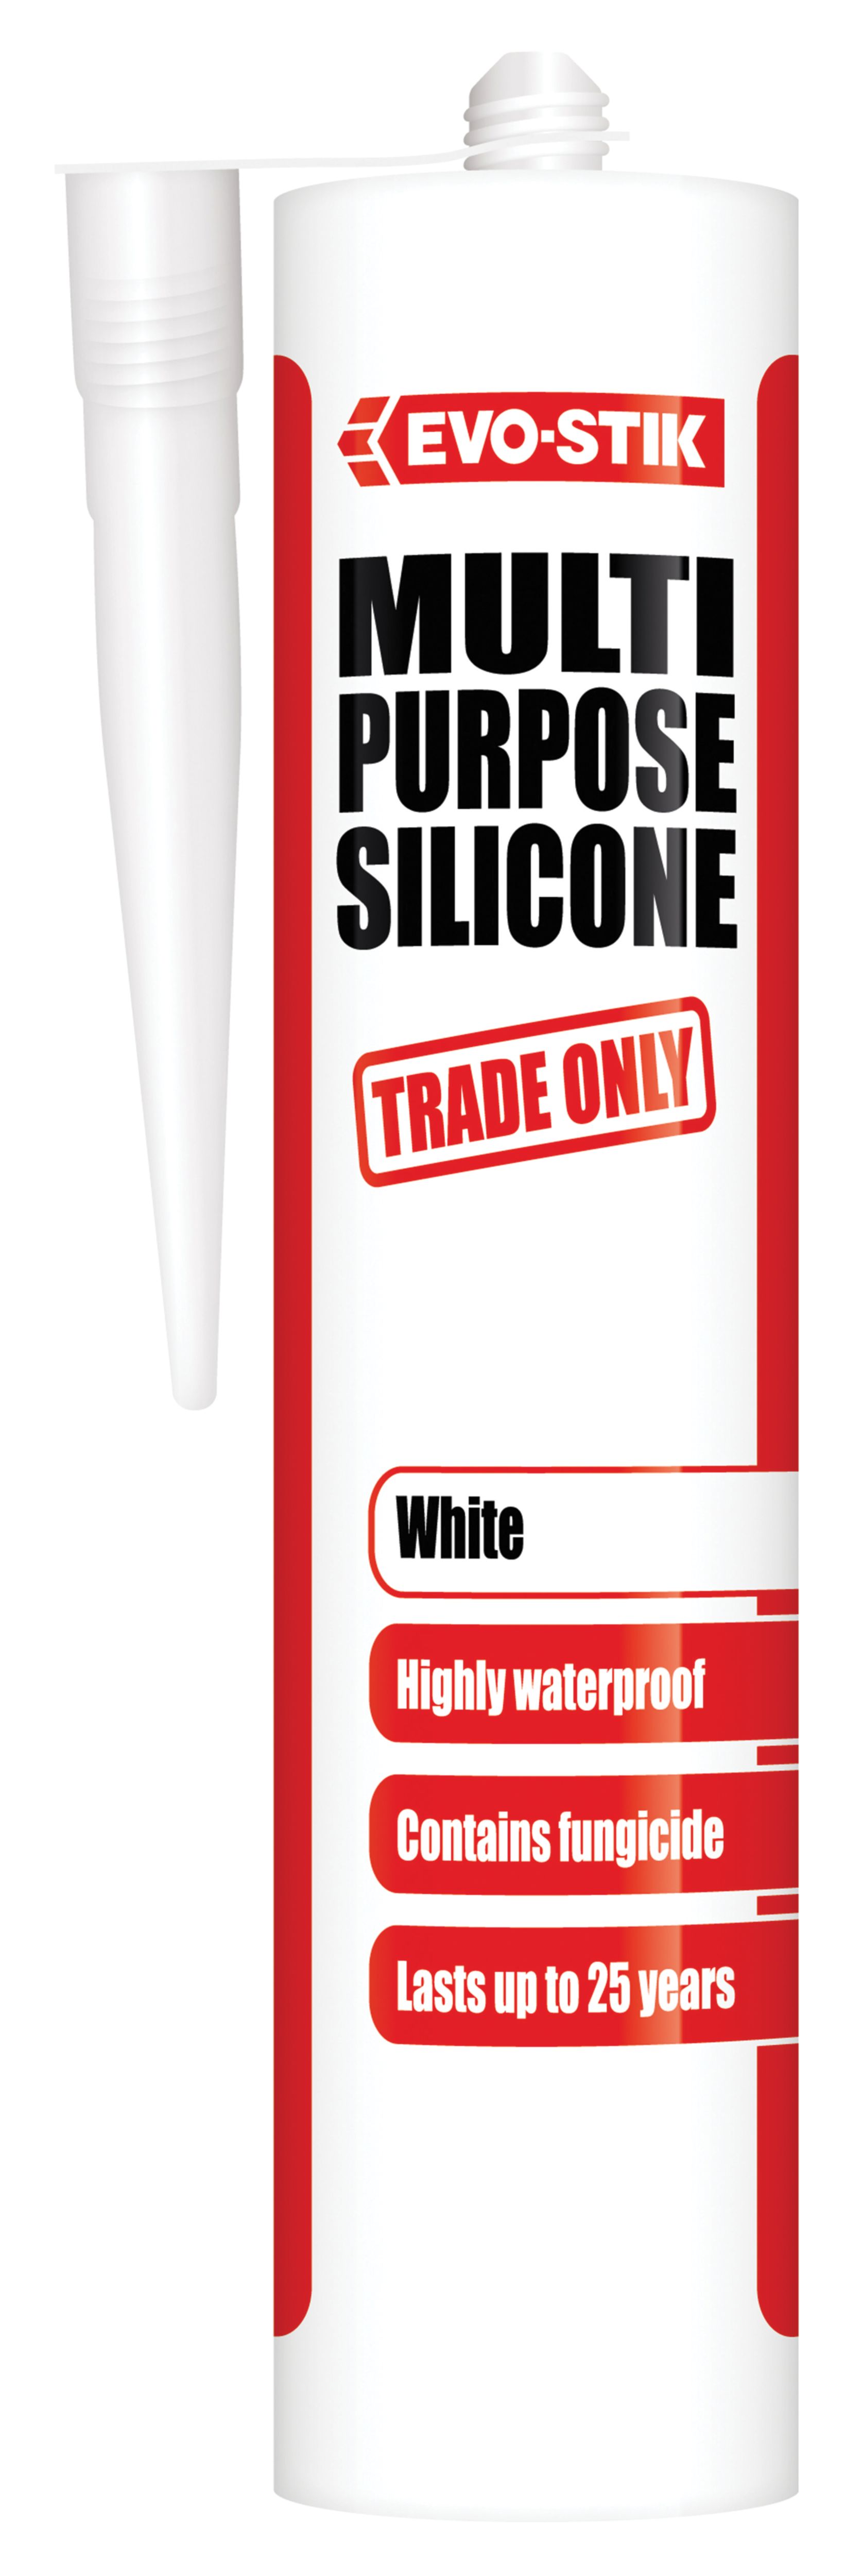 Image of Evo-Stik Trade Only Multi-Purpose Silicone - White 280ml